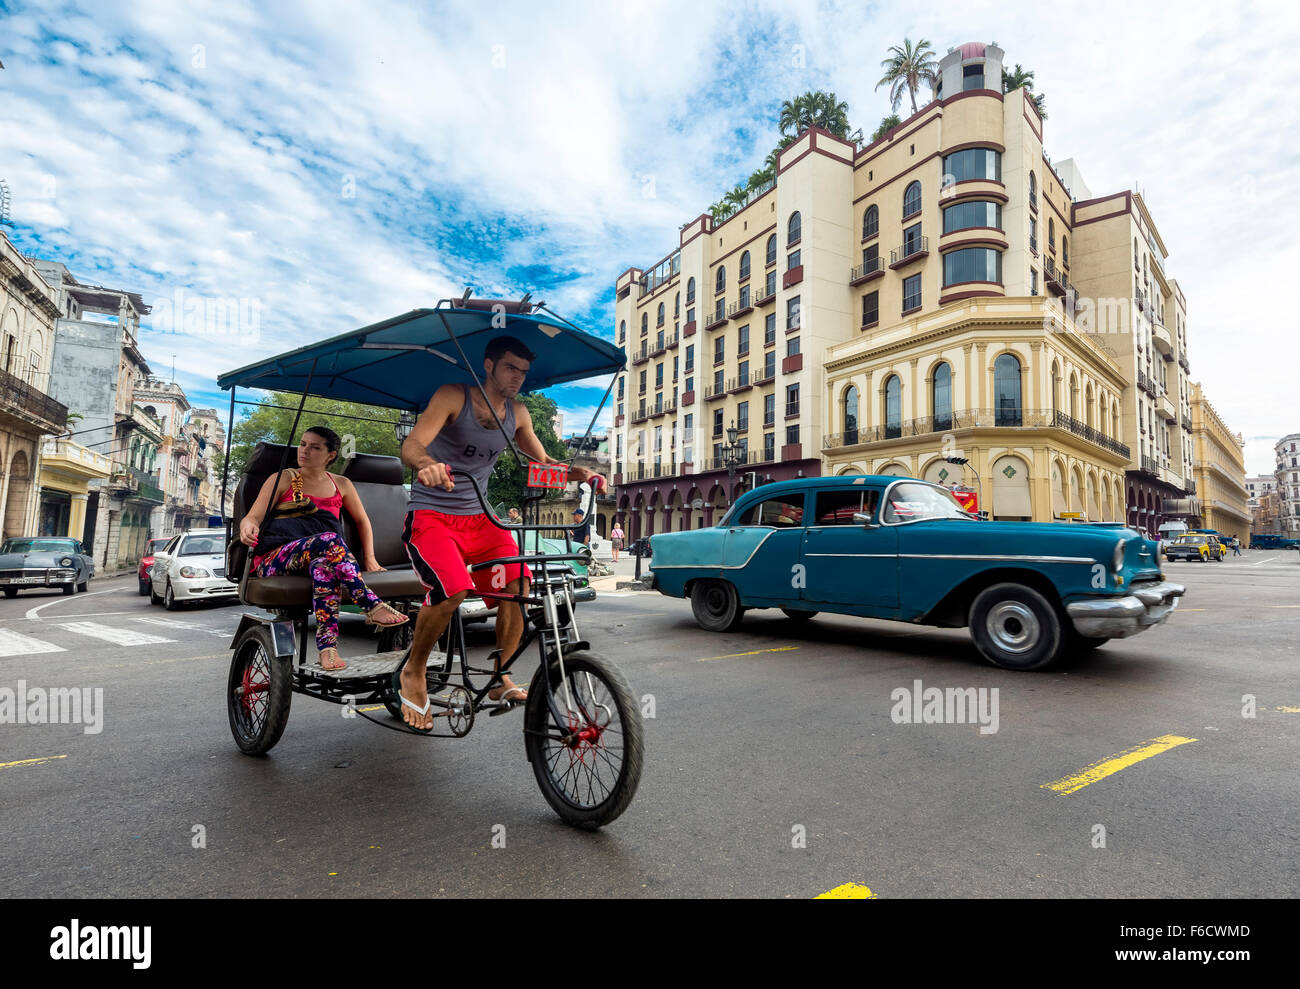 Oldtimer nelle vie, pedicab, persone taxi sulla strada incrocio vicino al Hotel Telegrafo, Scene di strada, La Habana, Foto Stock